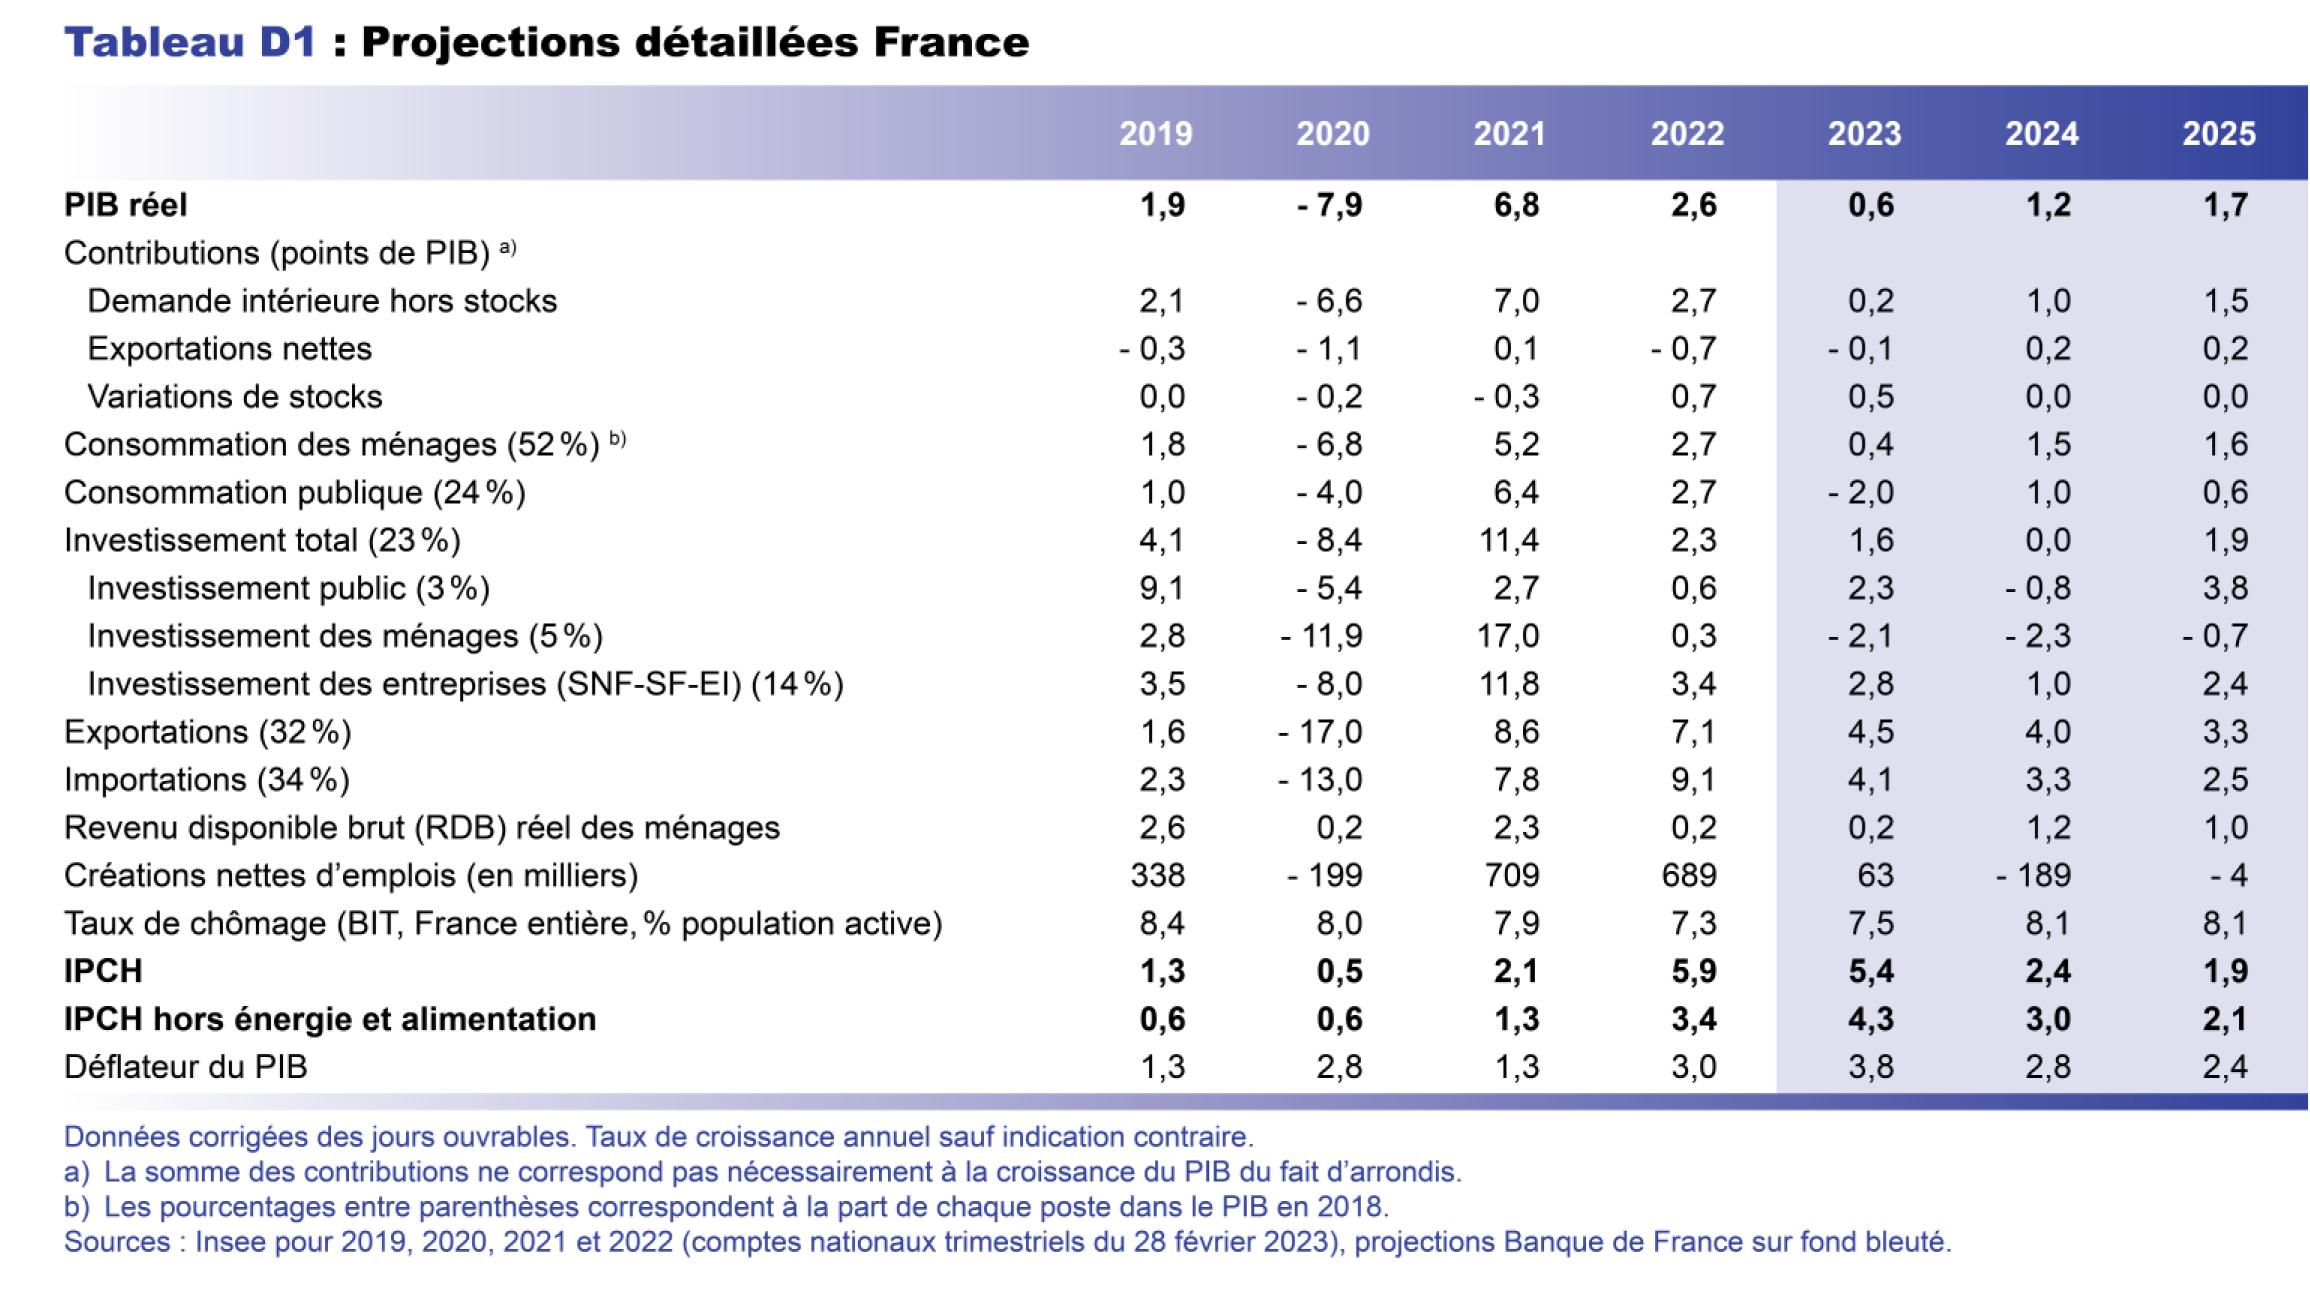 Projection macro mars 2023 - Projections détaillées France